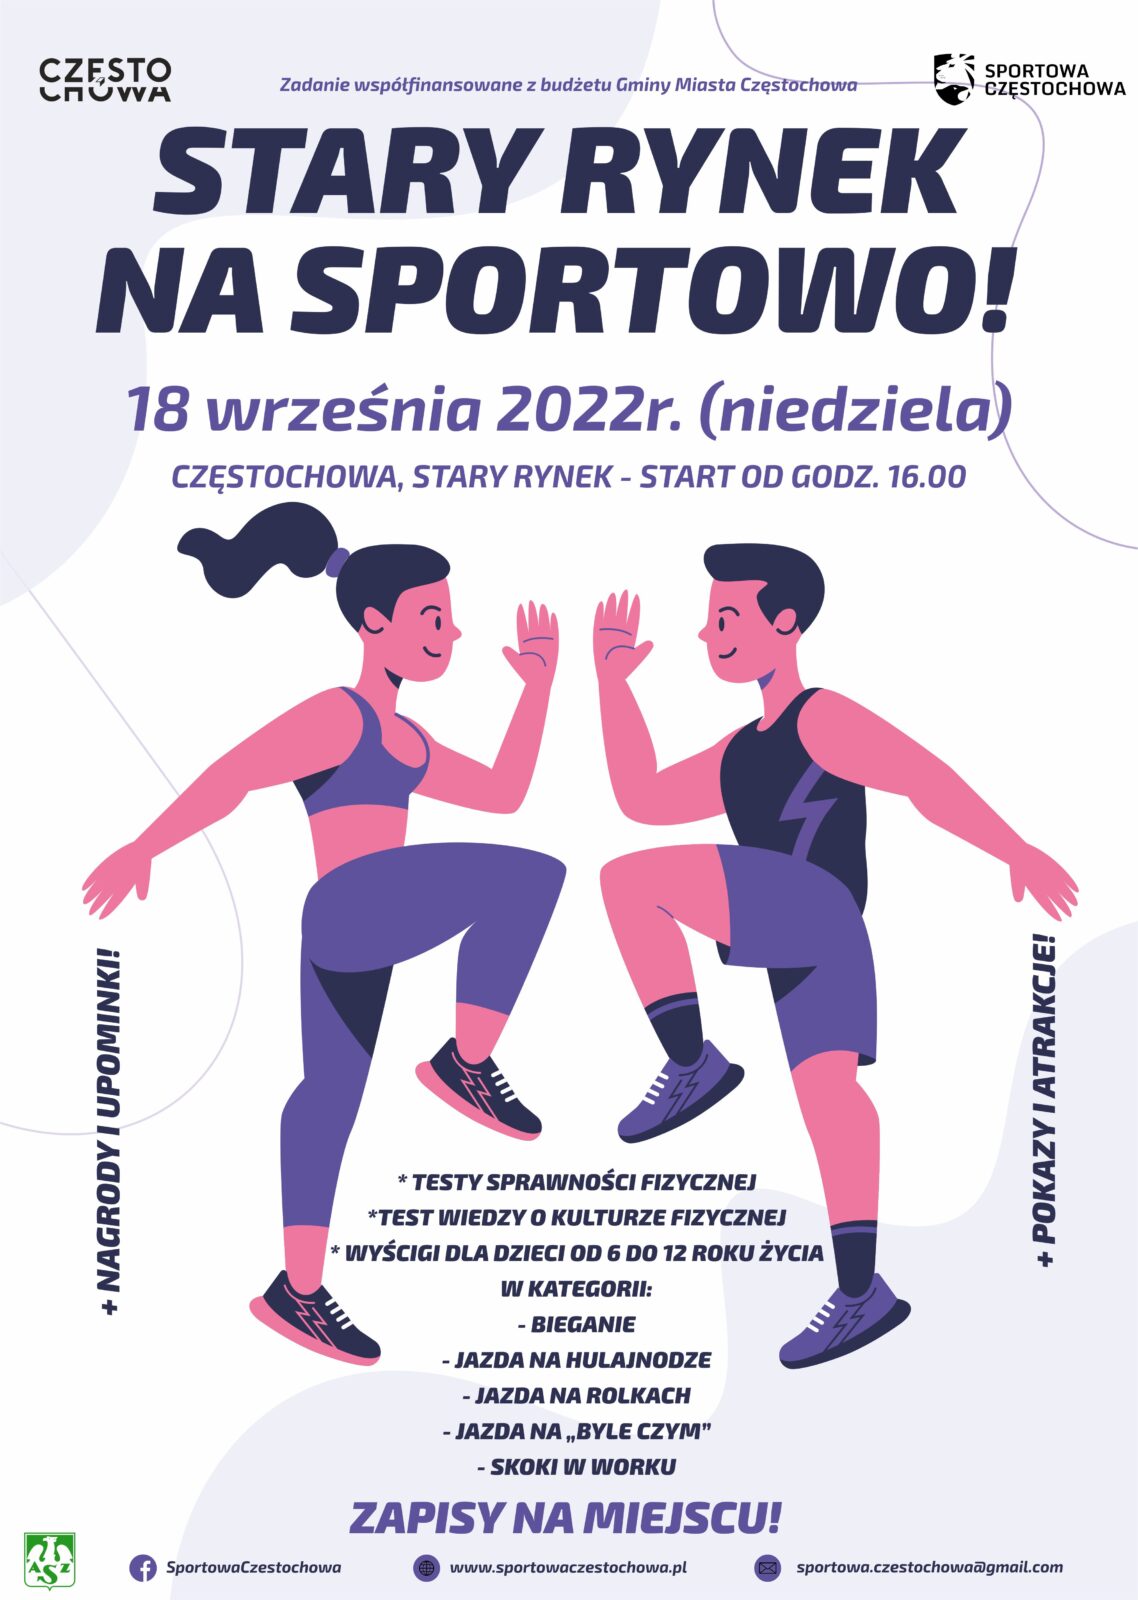 Sportowa Częstochowa organizuje imprezę Stary Rynek na sportowo 1